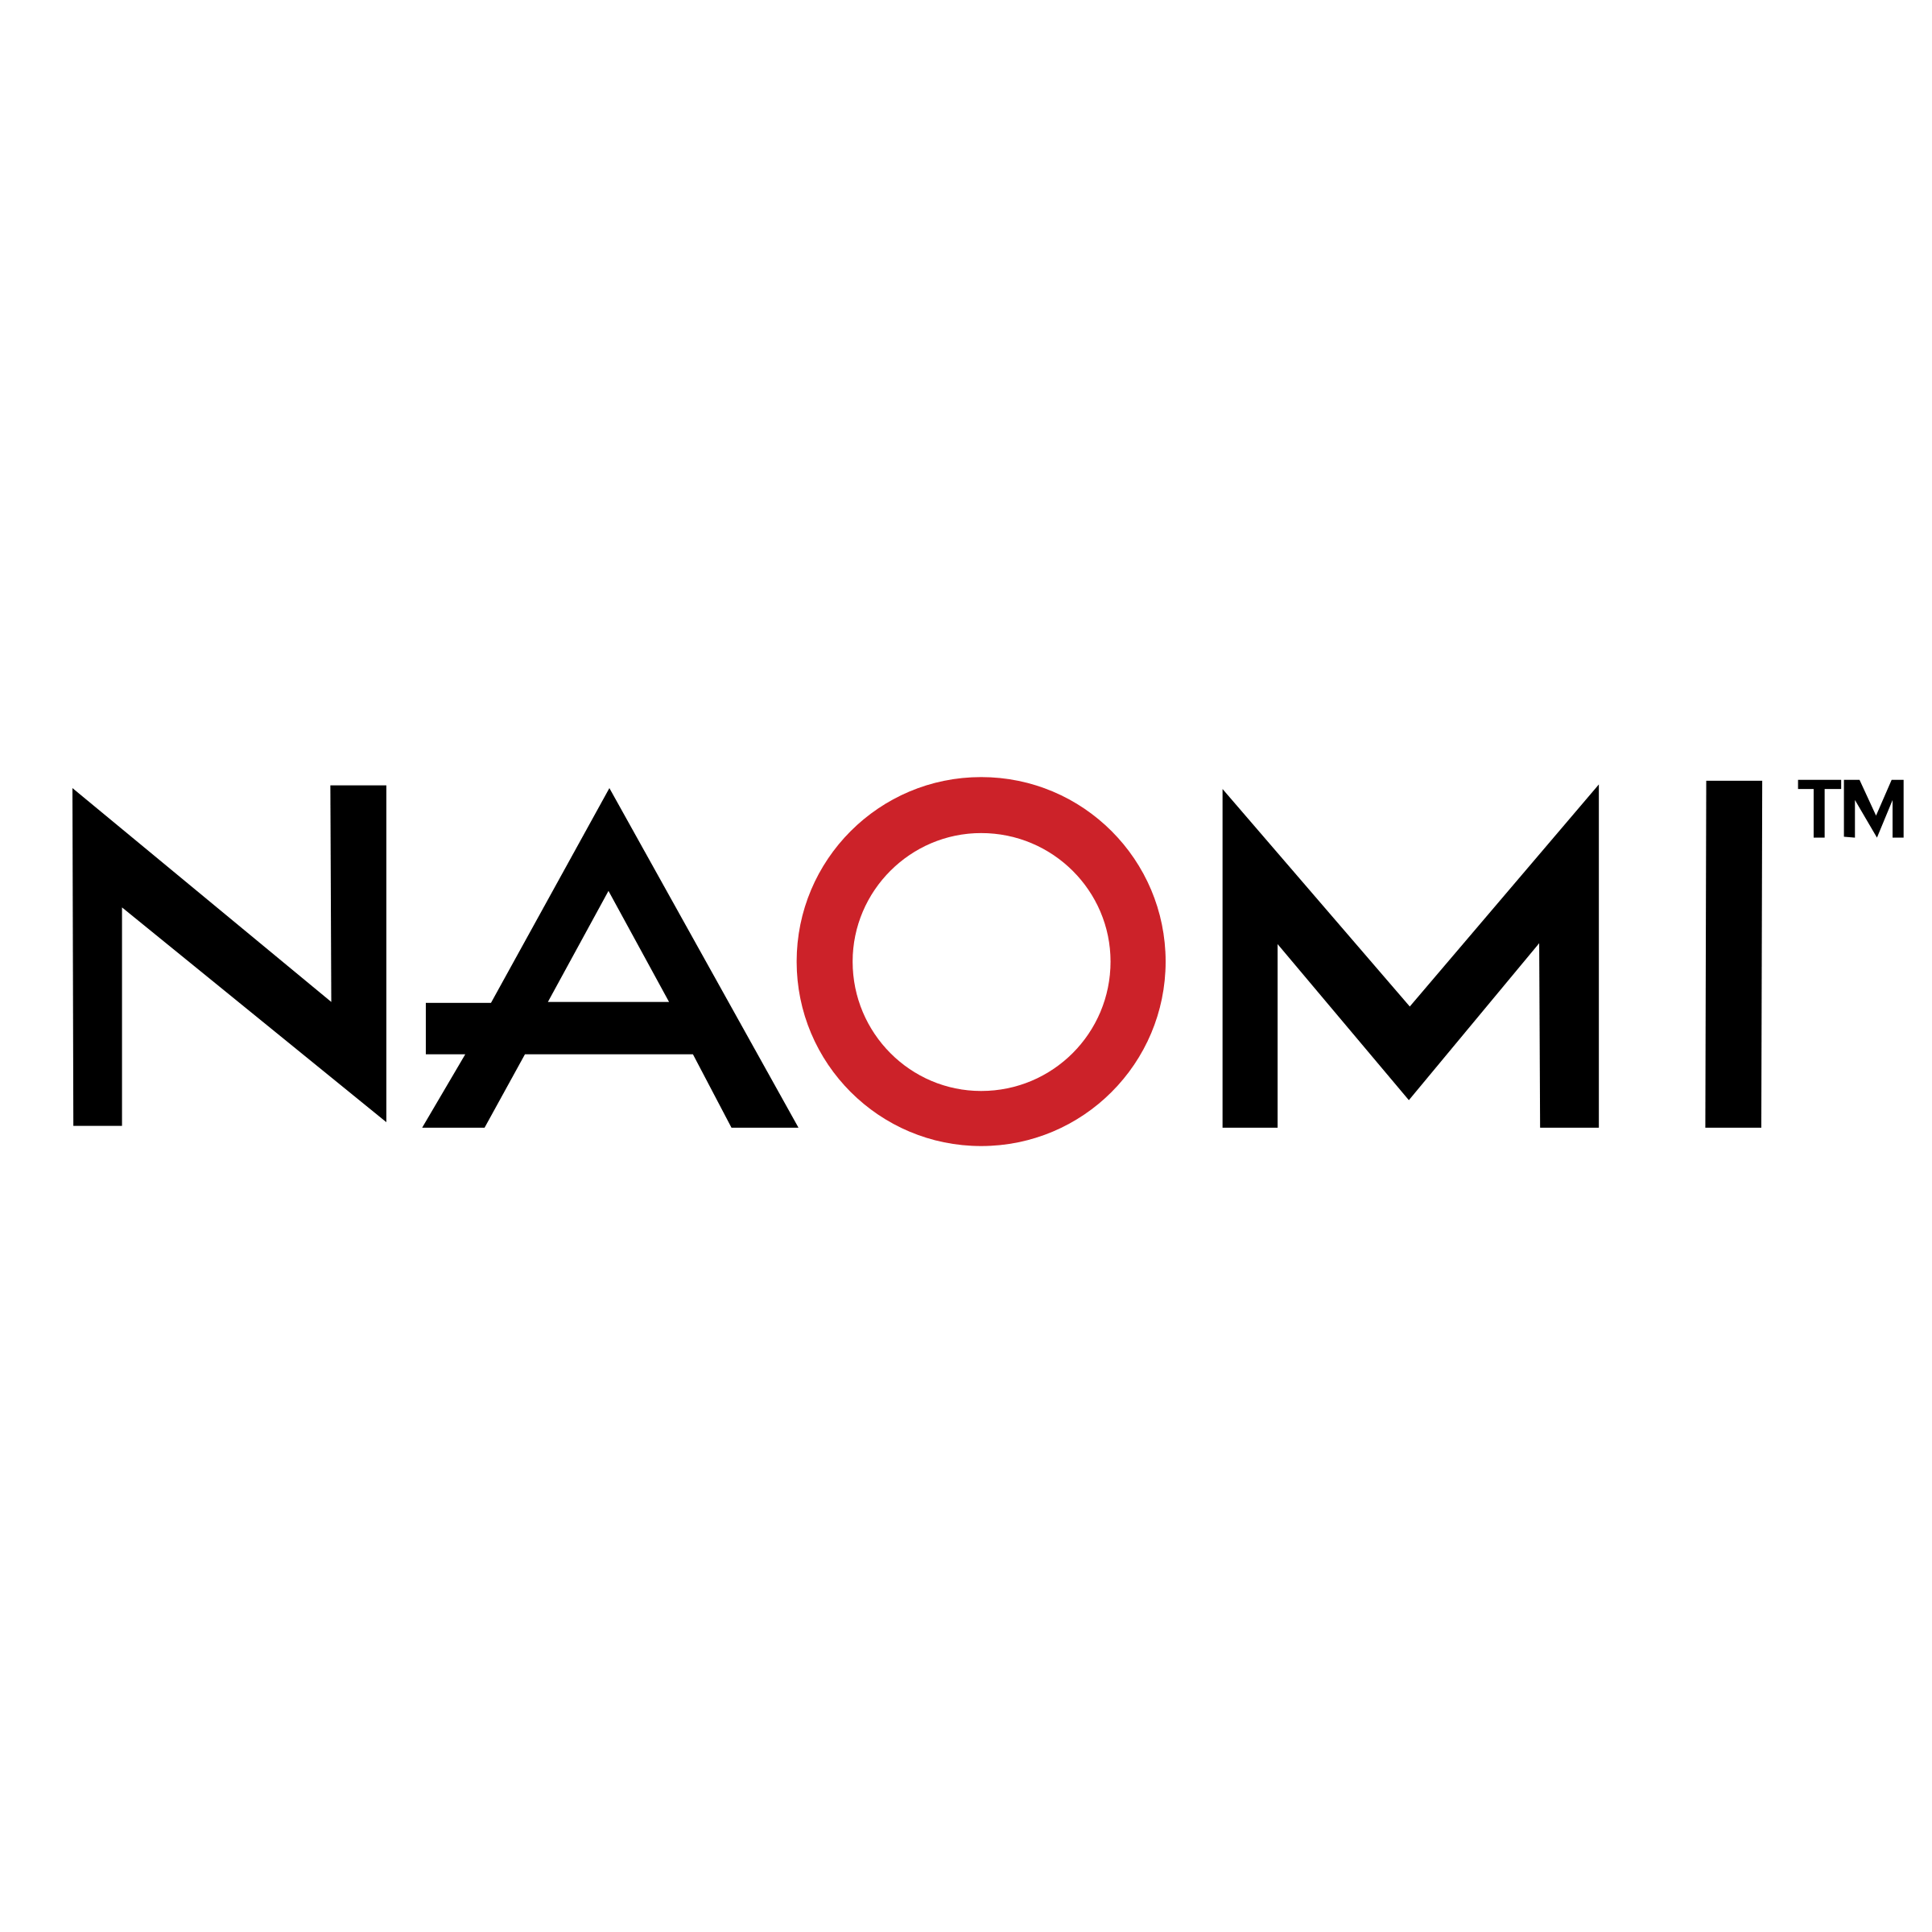 Naomi Logo - Naomi Logo PNG Transparent & SVG Vector